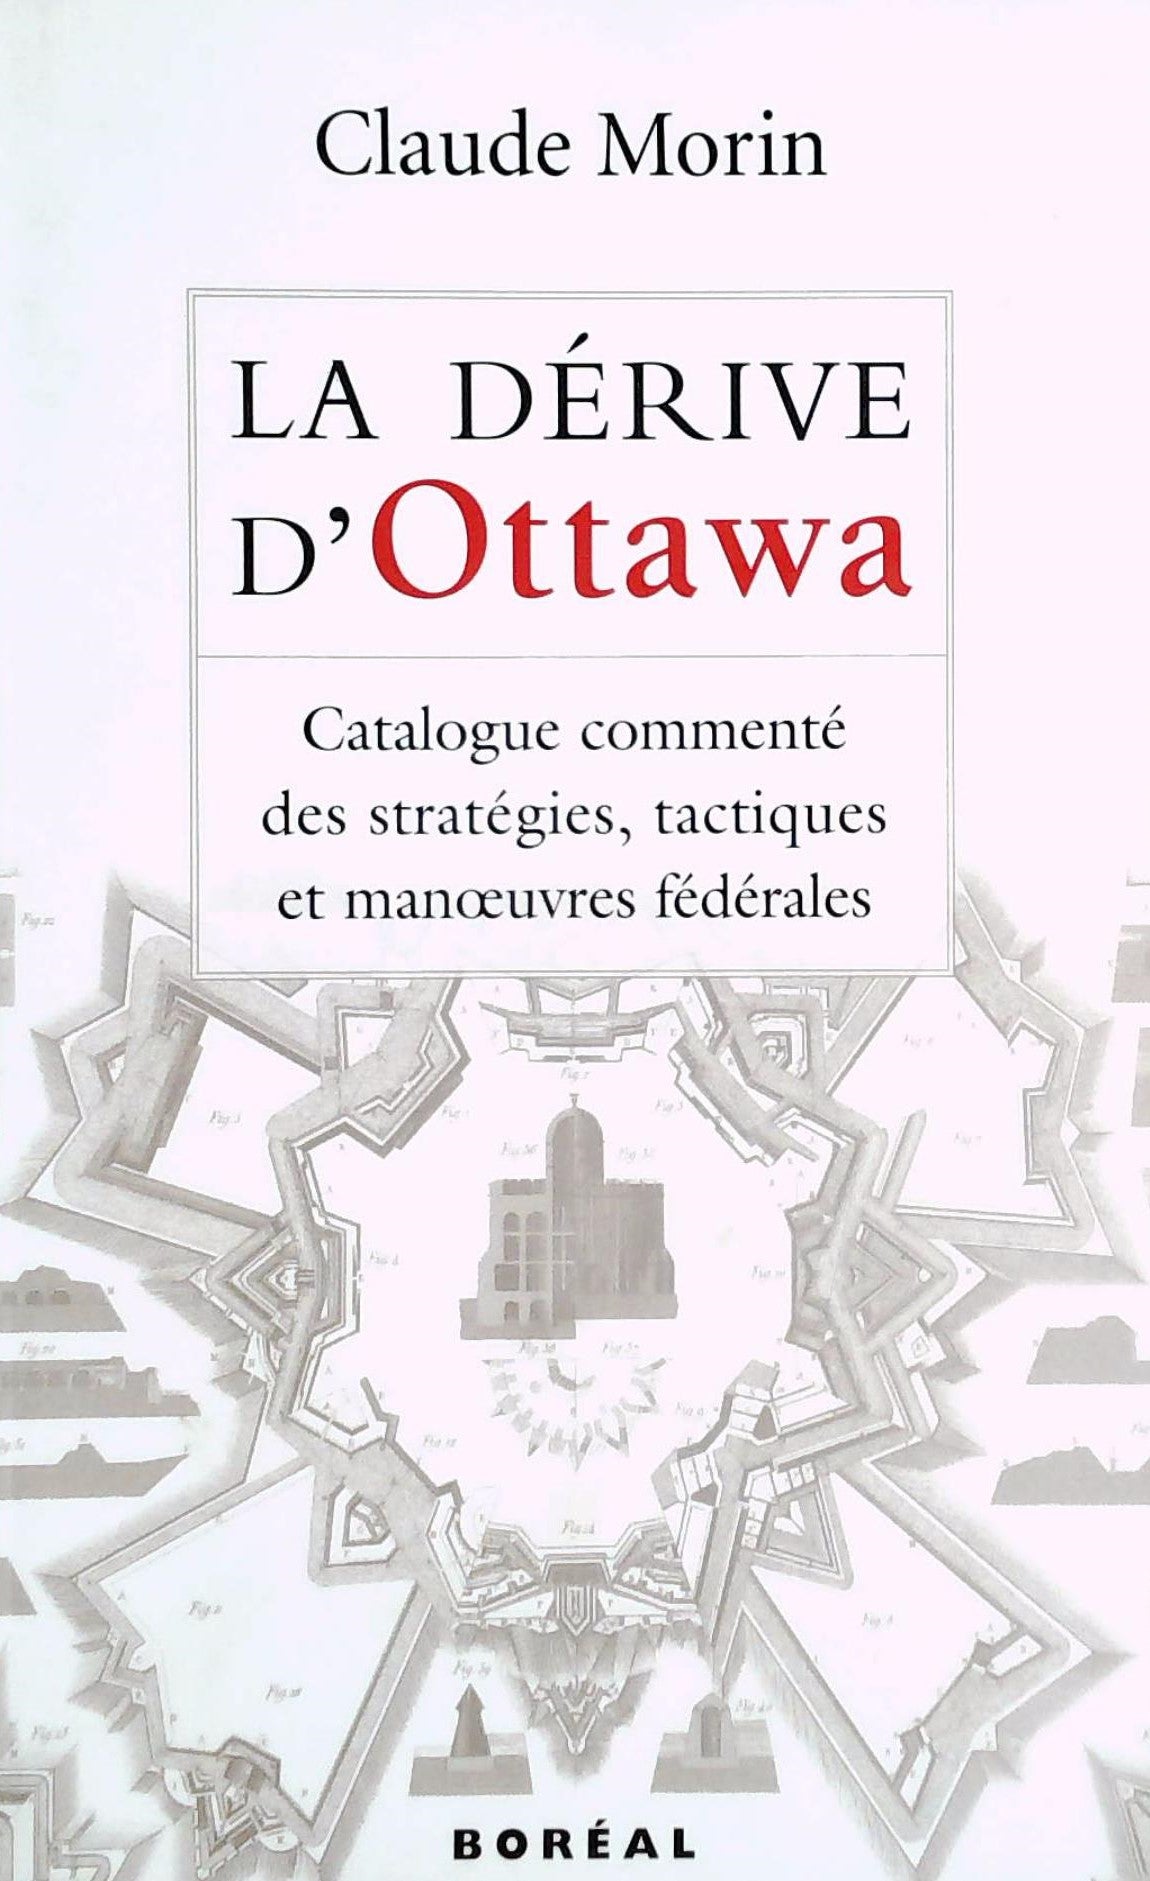 Livre ISBN 2890529037 La dérive d'Ottawa : Catalogue commenté des stratégies, tactiques et manoeuvres fédérales (Claude Morin)